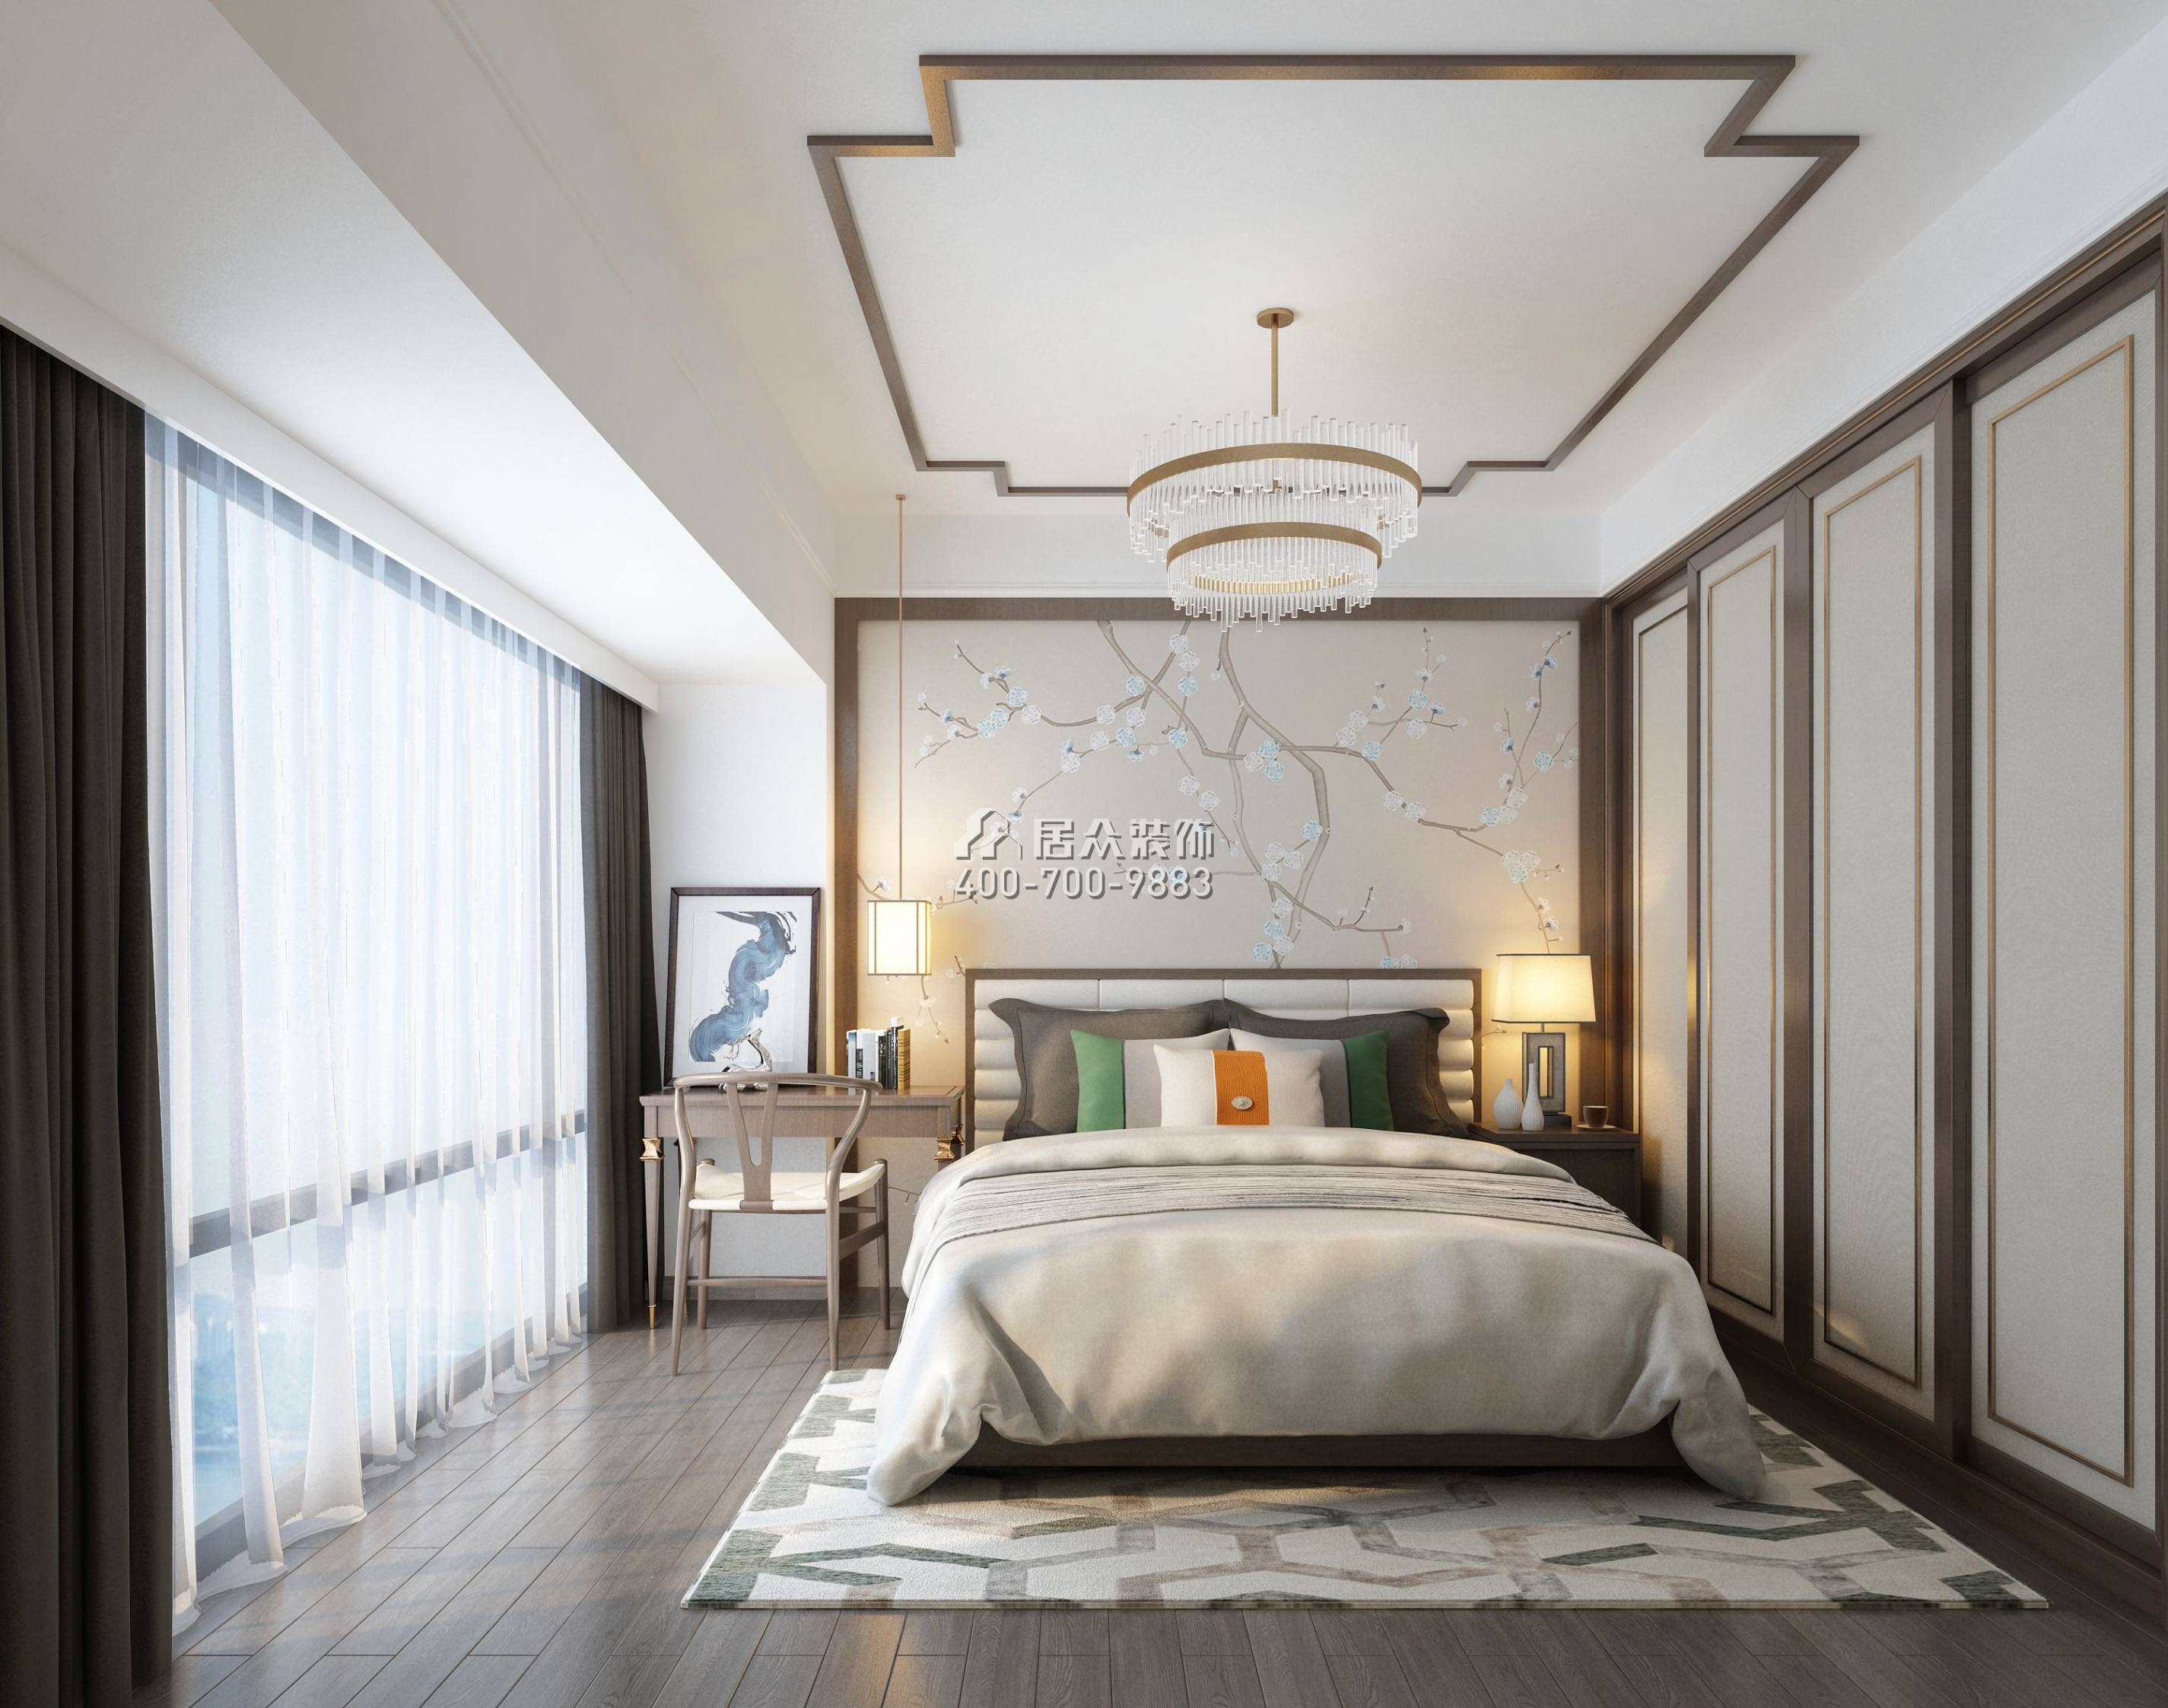 平吉上苑二期98平方米中式风格平层户型卧室装修效果图